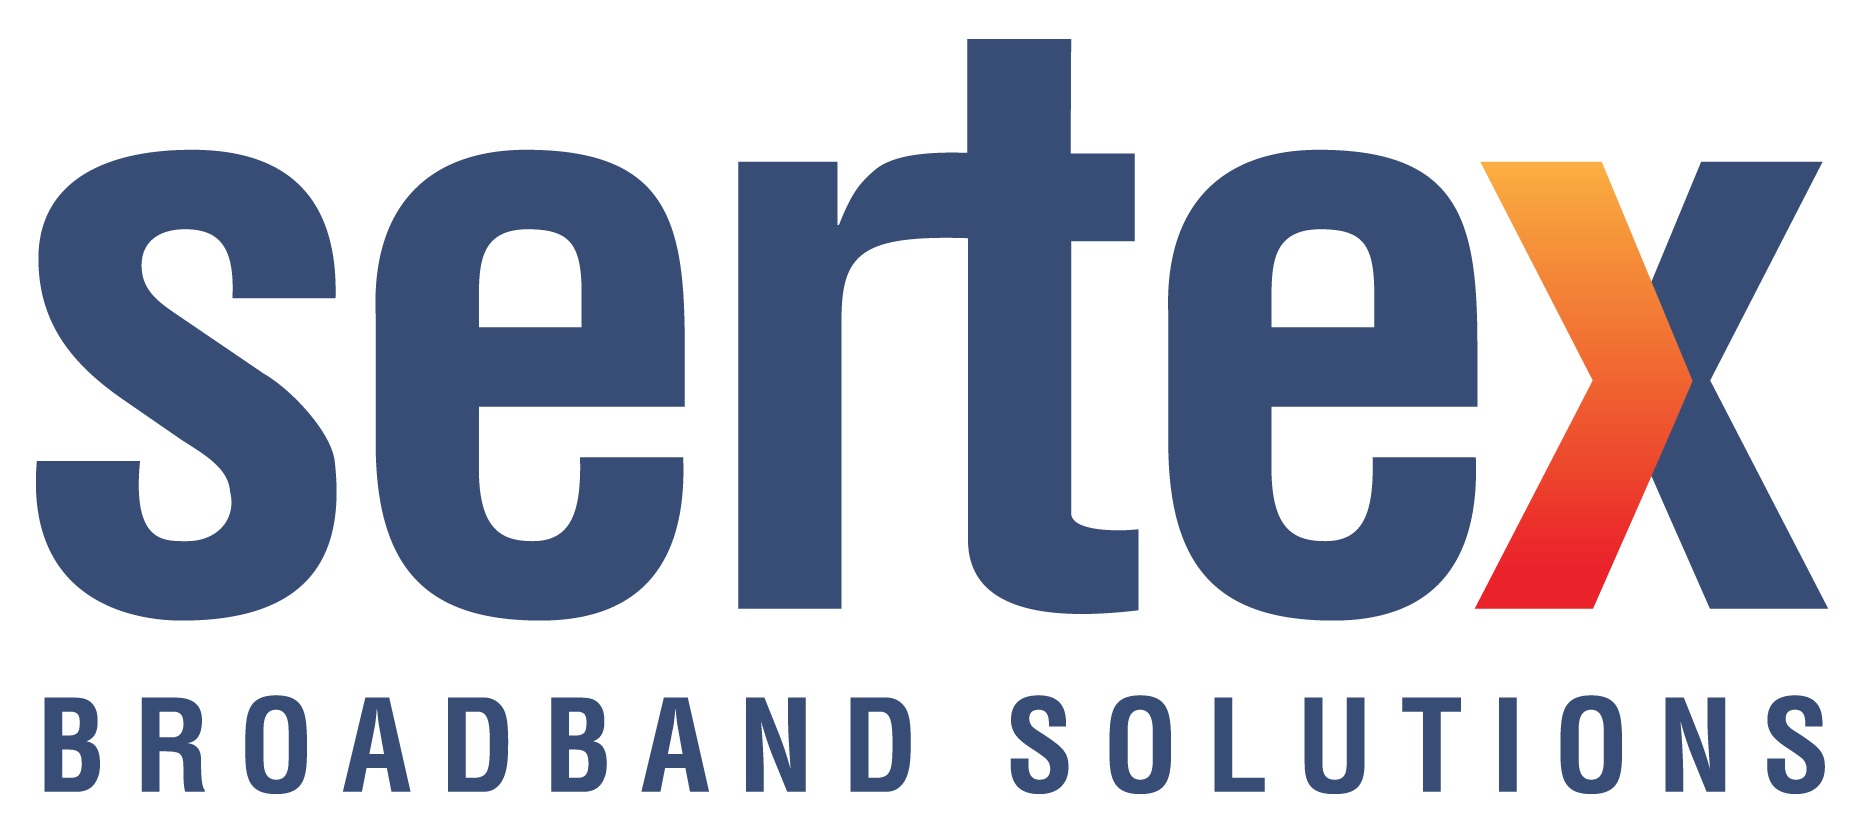 sertex logo